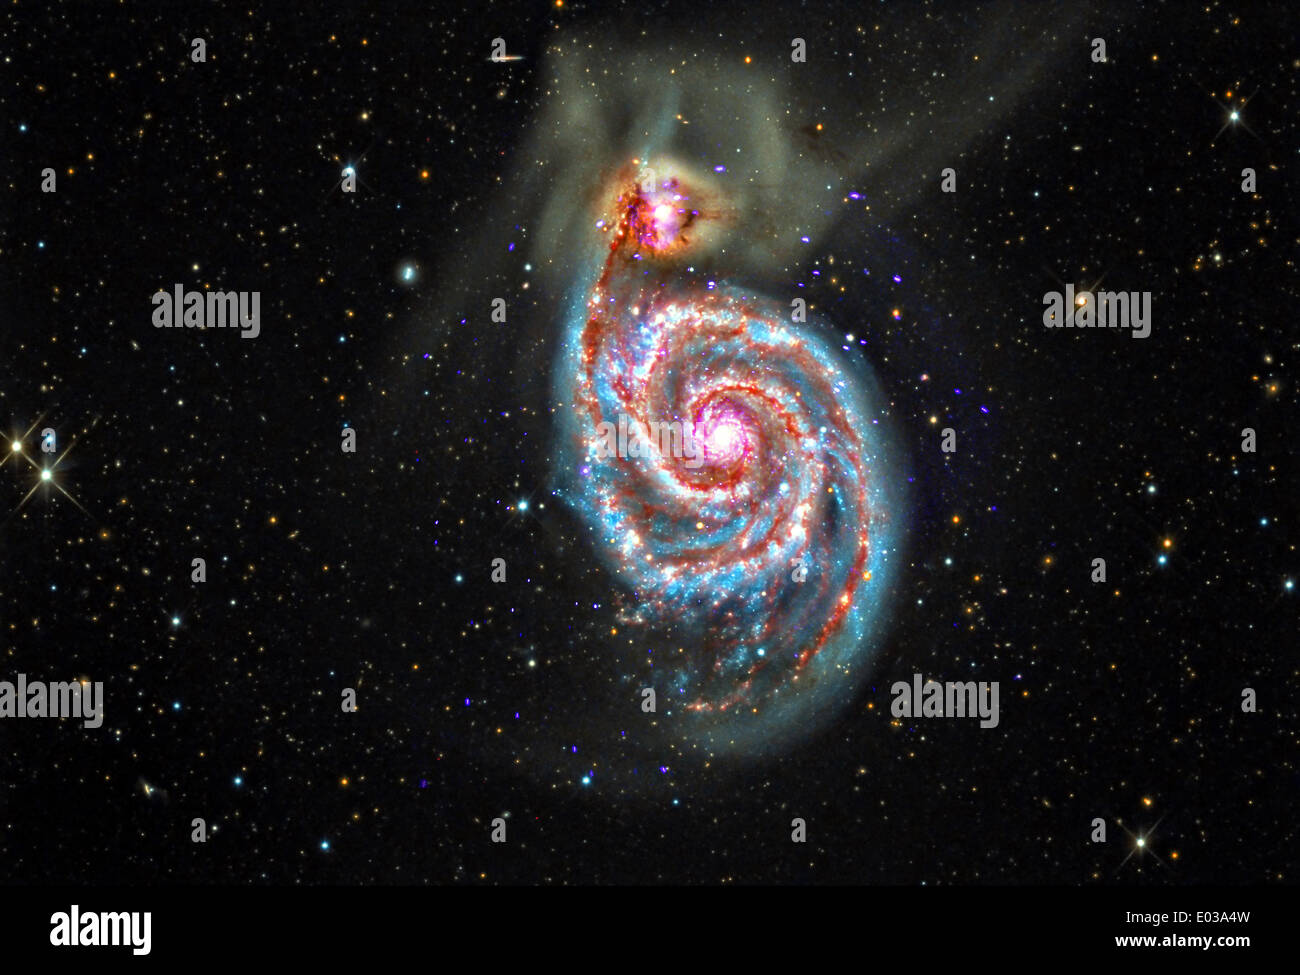 Spiralgalaxie M51, die etwa 30 Millionen Lichtjahre von der Erde entfernt liegt genannt ist in den Prozess der Verschmelzung mit einer kleineren Galaxie gesehen in die obere linke Ecke durch das Chandra-Weltraumteleskop erfasst. Bildnachweis: Planetpix/Alamy Live-Nachrichten Stockfoto